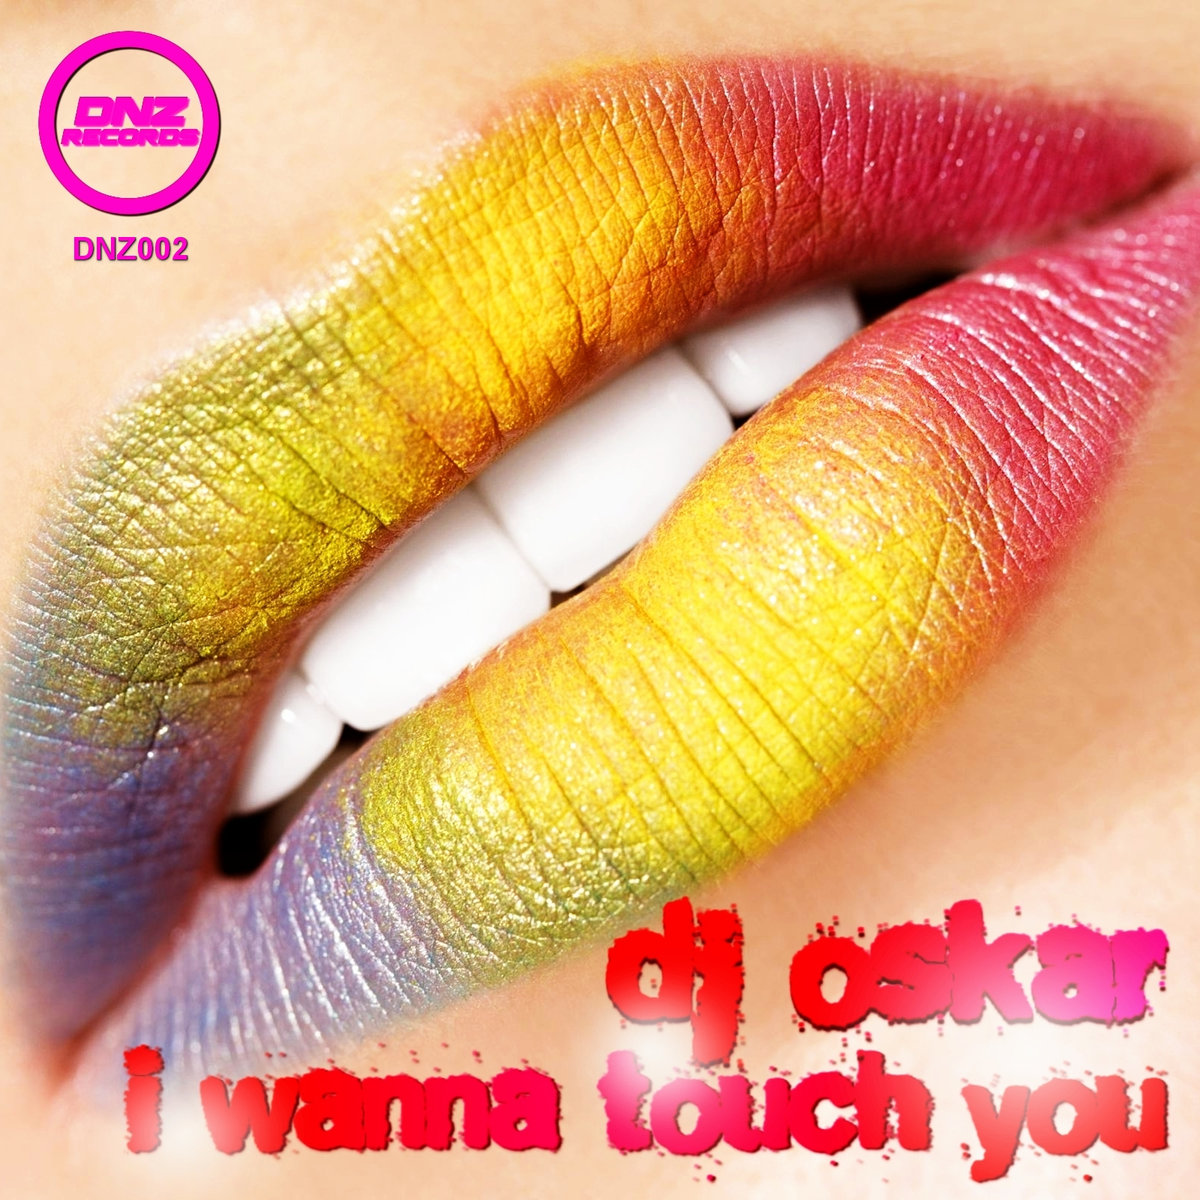 DJ Oskar - I Wanna Touch You